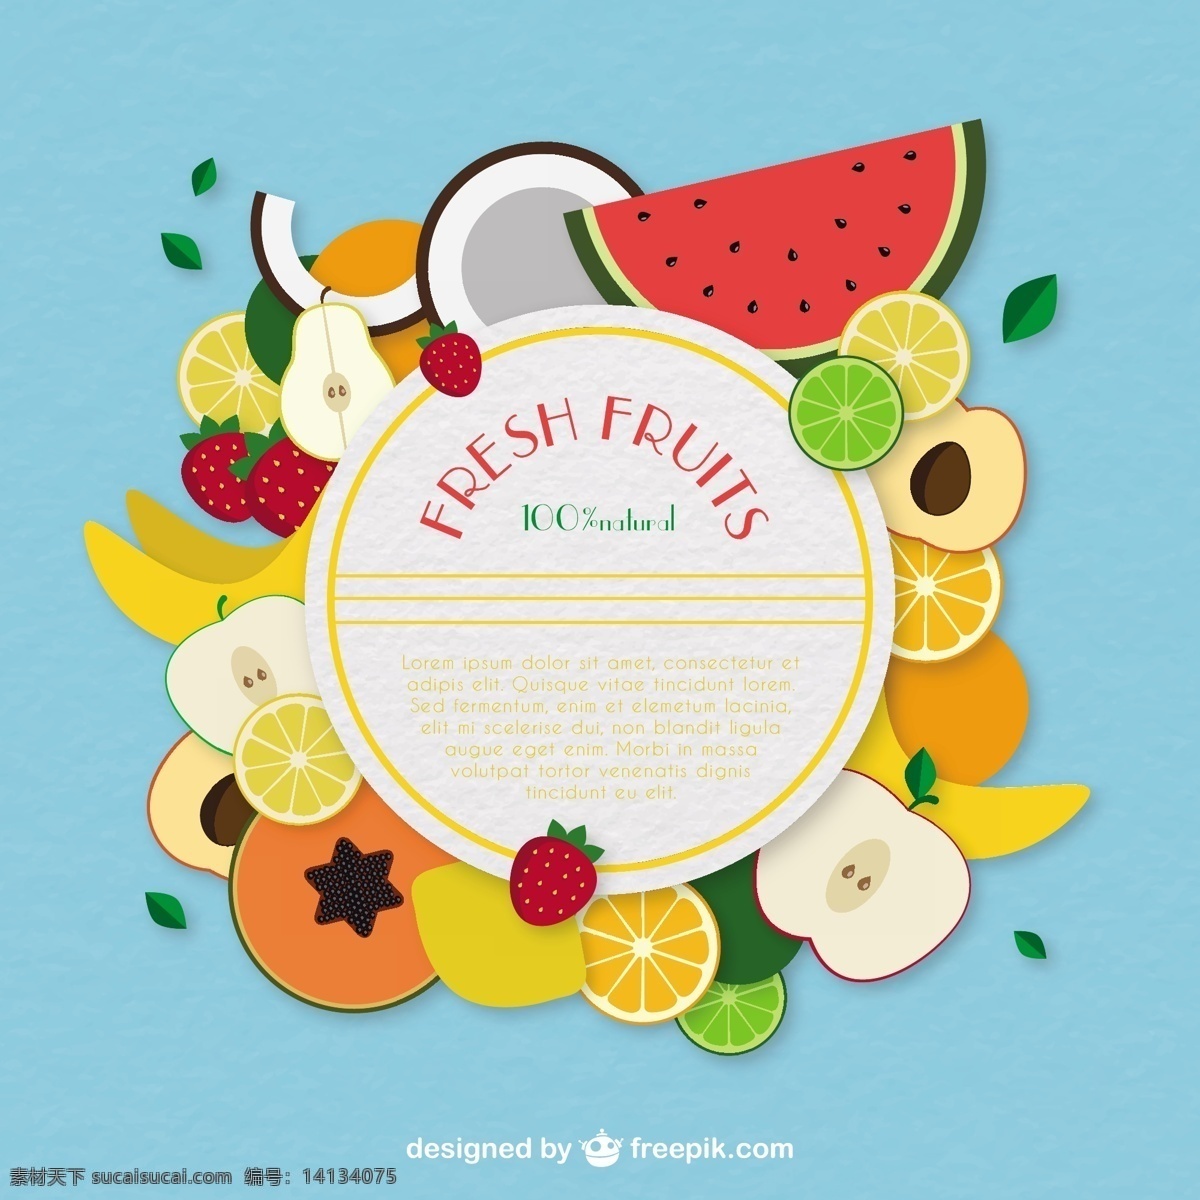 新鲜 水果 标签 食品 自然 模板 苹果 橘子 有机 草莓 柠檬 香蕉 椰子 西瓜 有机食品 梨 苹果等水果 青色 天蓝色